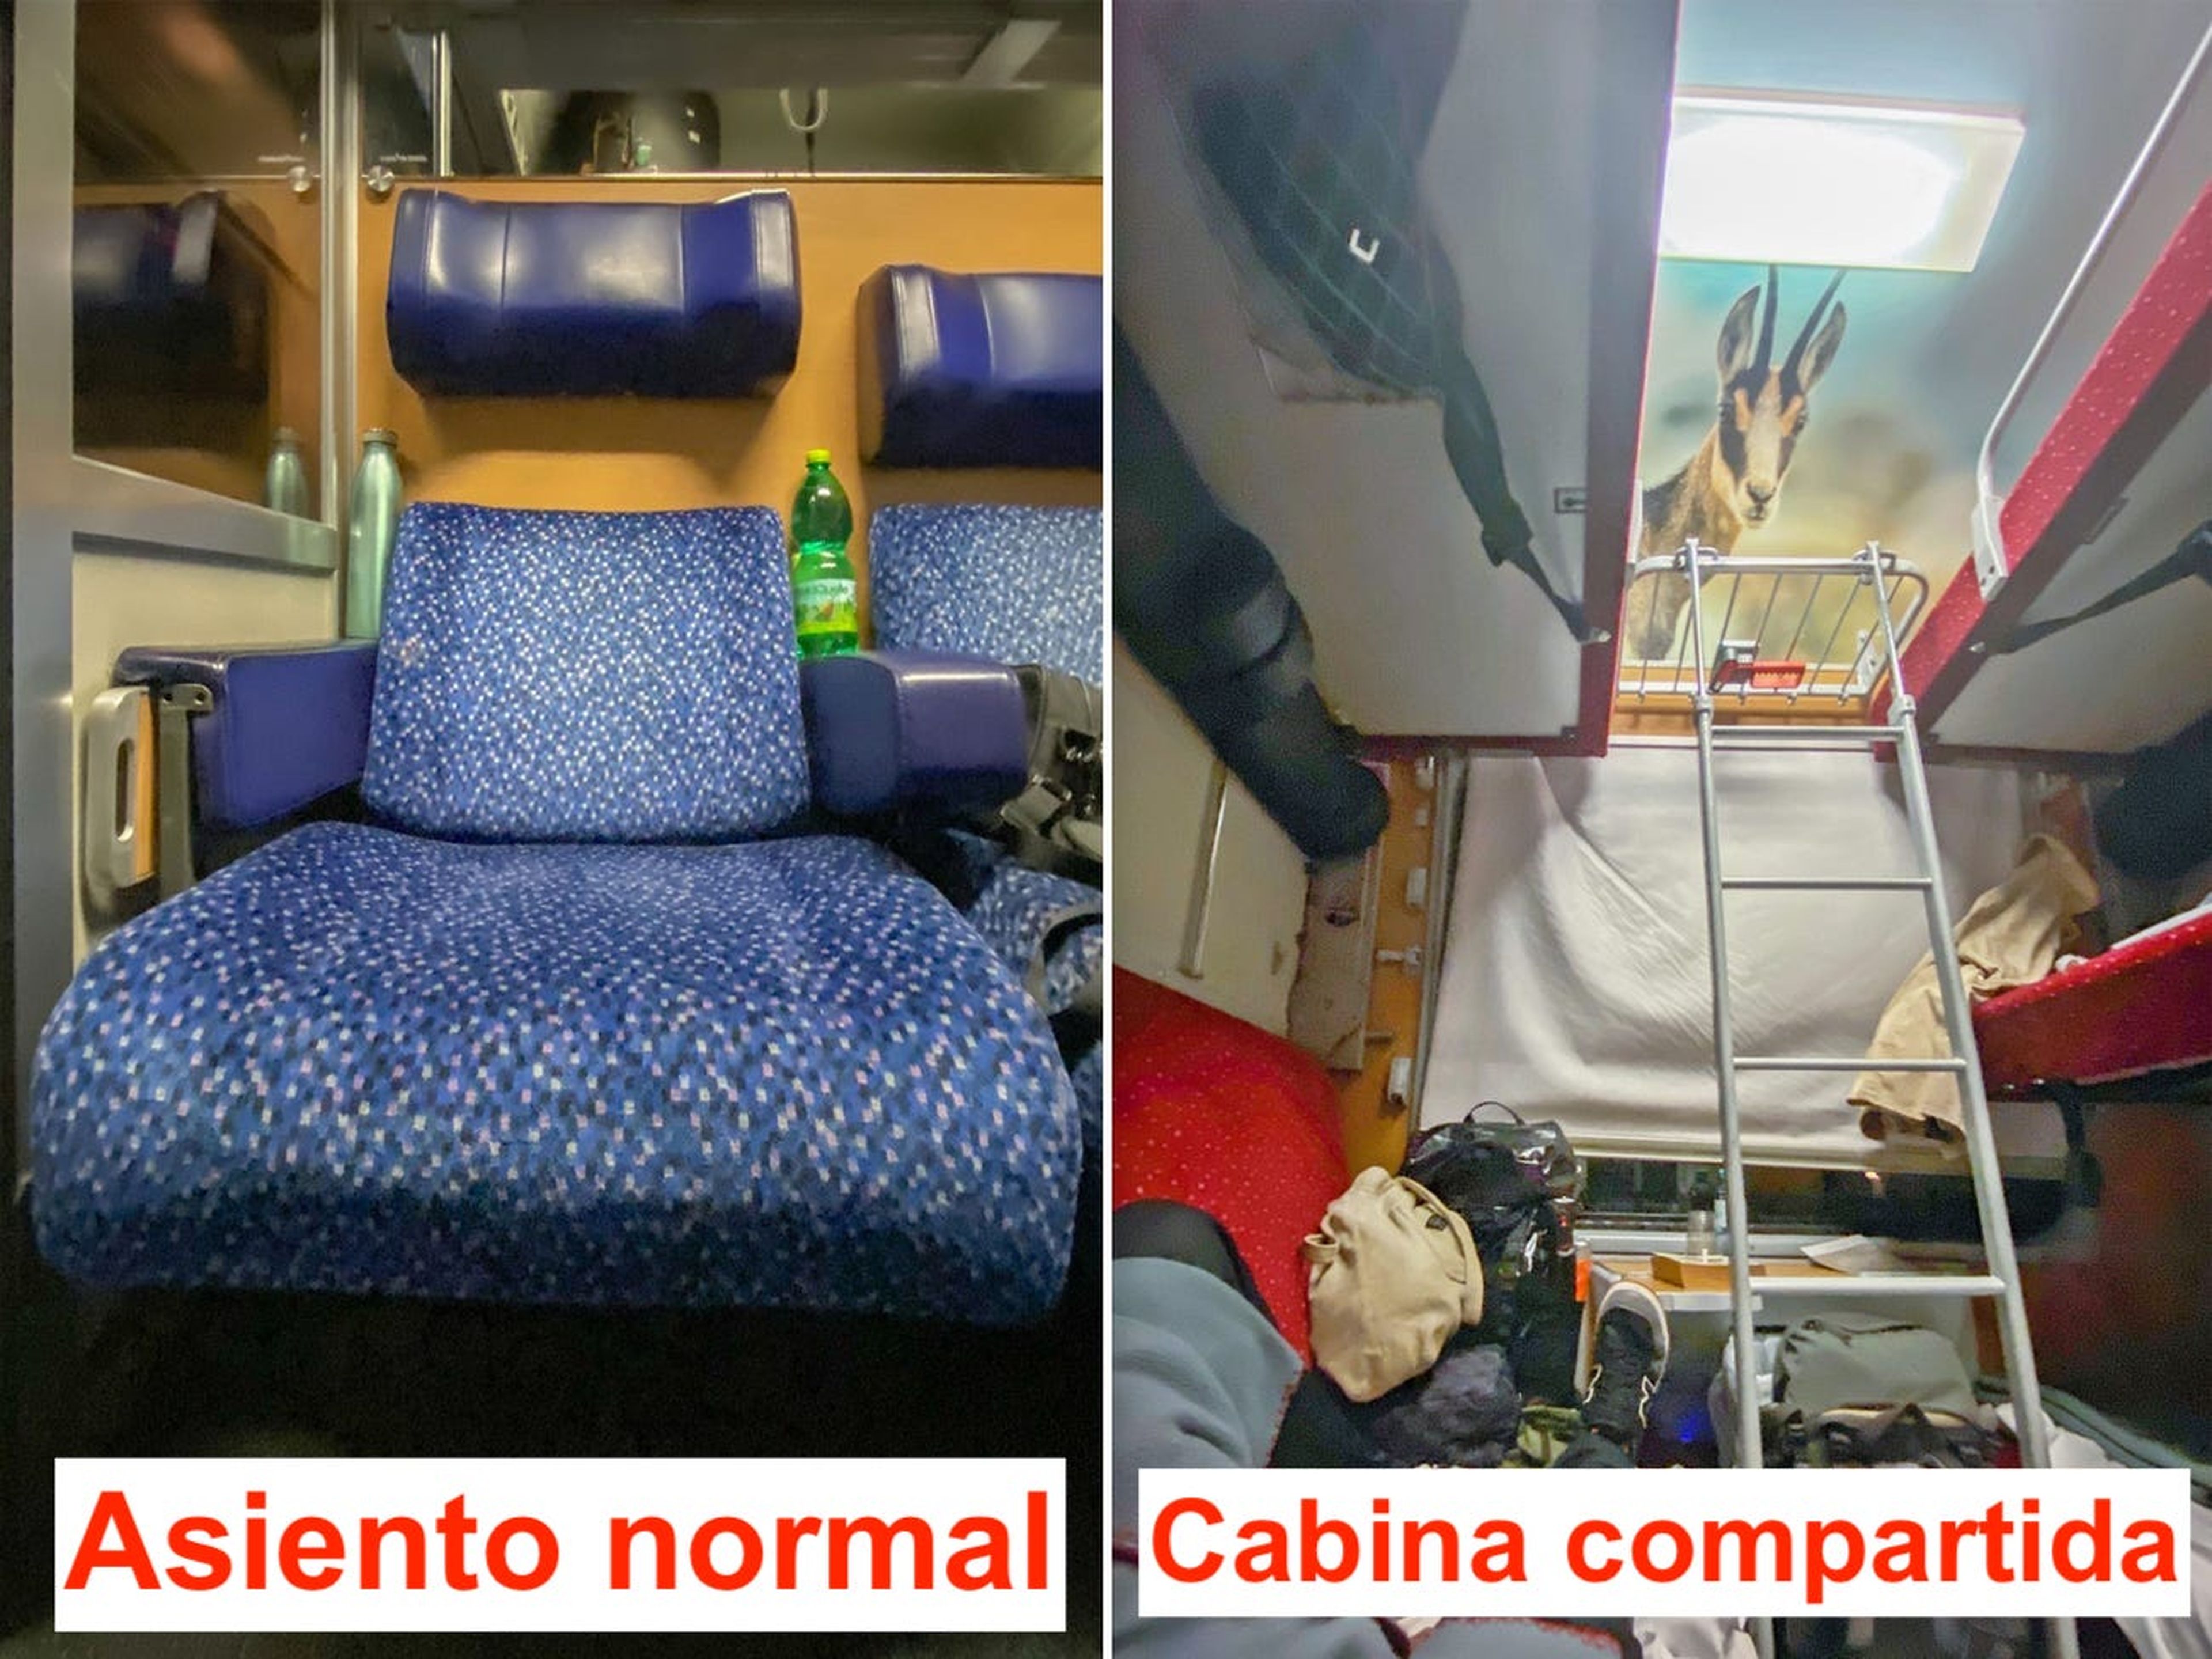 Asiento normal y cabina compartida en un tren.